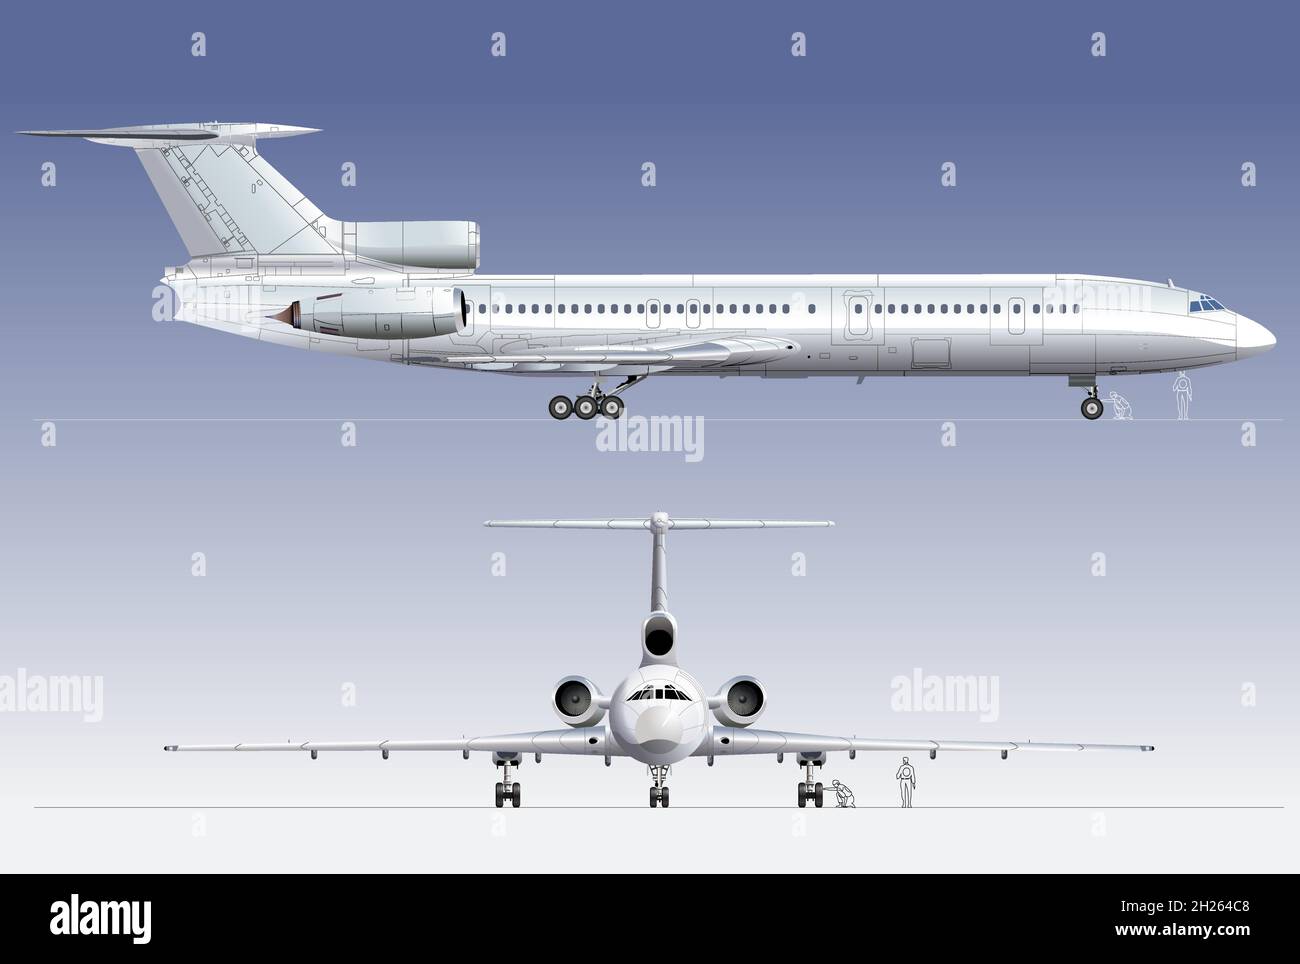 Avion civil.Format vectoriel EPS-10 disponible, séparé par des groupes et des calques, pour un montage facile Illustration de Vecteur